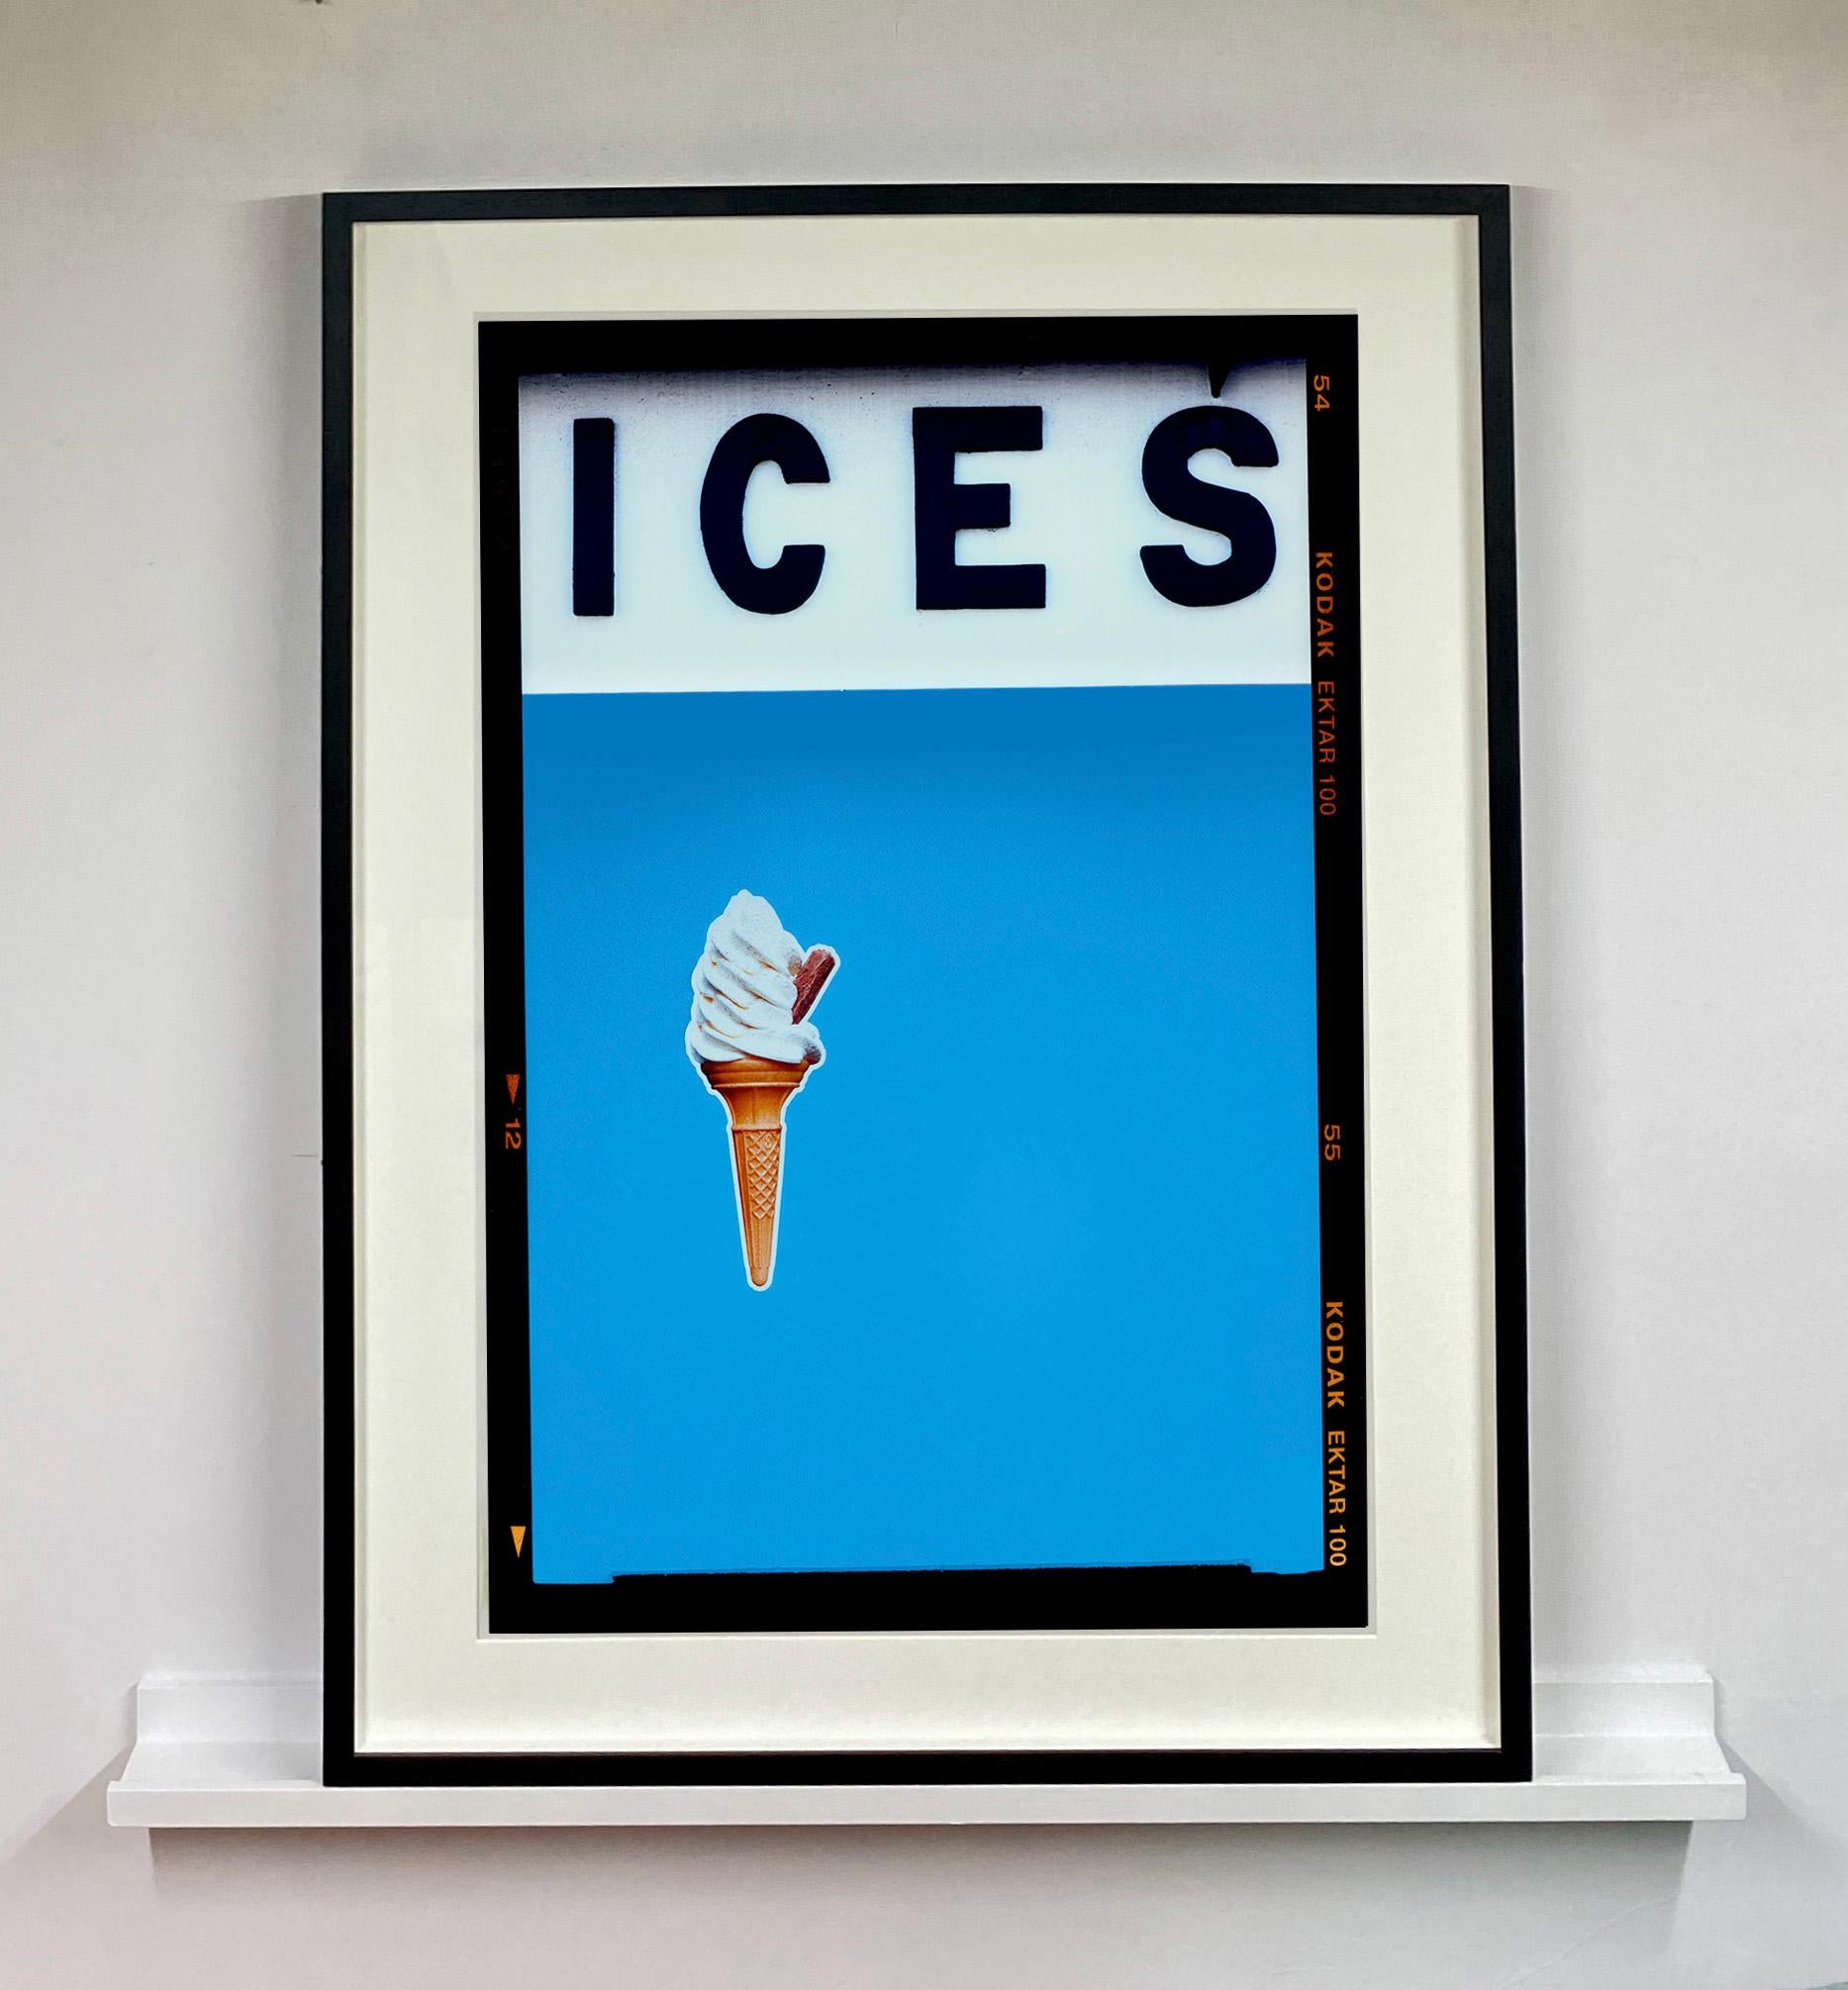 ICES, von Richard Heeps, fotografiert an der britischen Küste am Ende des Sommers 2020. Bei diesem Kunstwerk geht es darum, Erinnerungen an die einfache Freude von Tagen am Strand zu wecken. Die hellblaue Farbgebung, die Typografie und die surreale